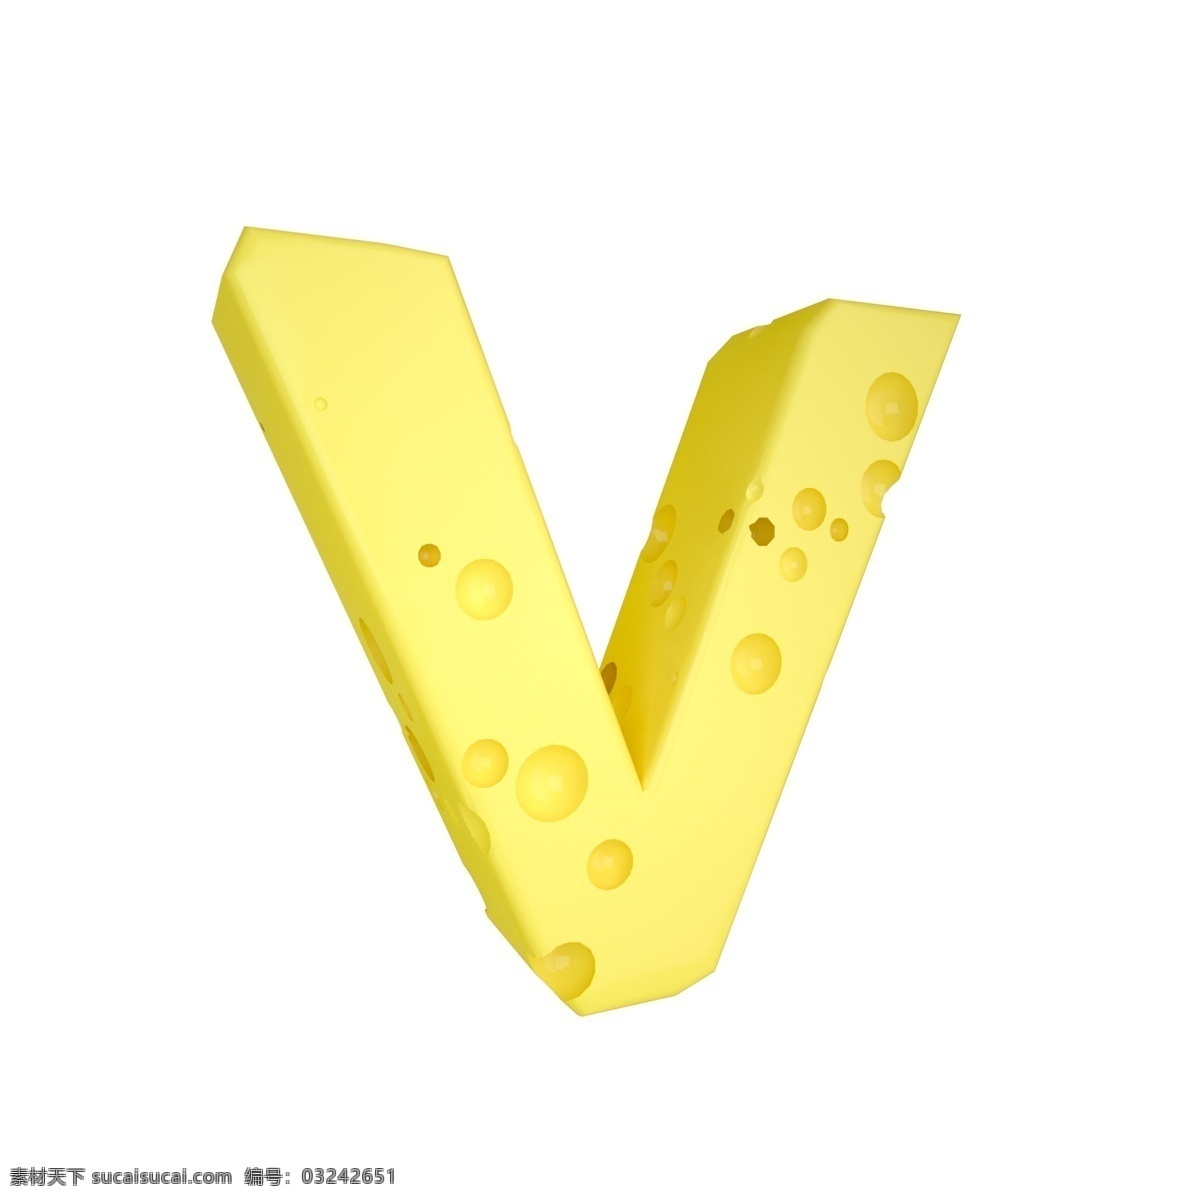 c4d 创意 奶酪 字母 v 装饰 3d 黄色 立体 食物 平面海报配图 电商淘宝装饰 可爱 柔和 字母v